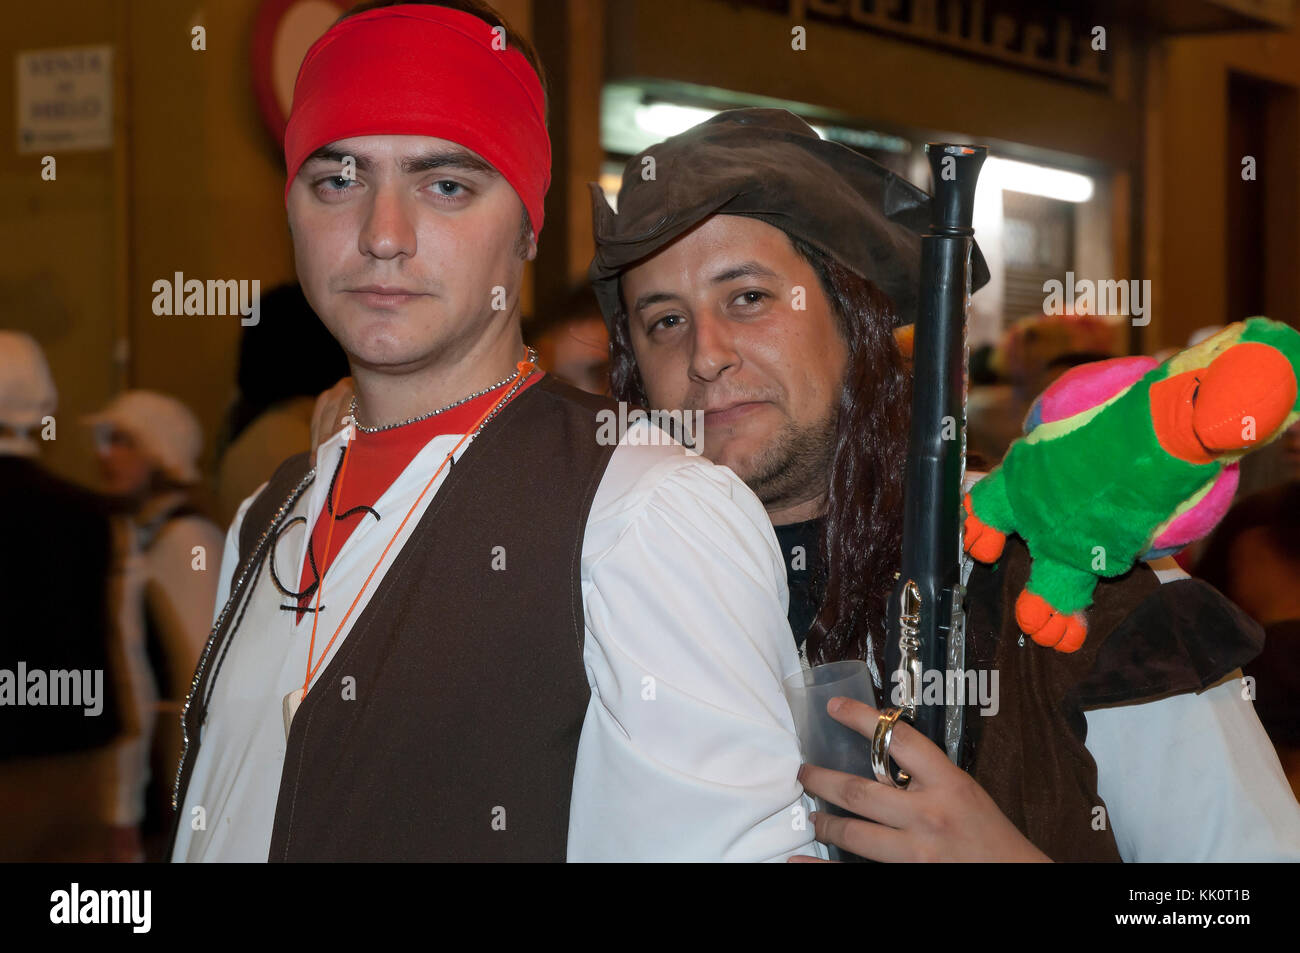 Carnaval, hombres disfrazados como piratas, Cádiz, región de Andalucía, España, Europa Foto de stock